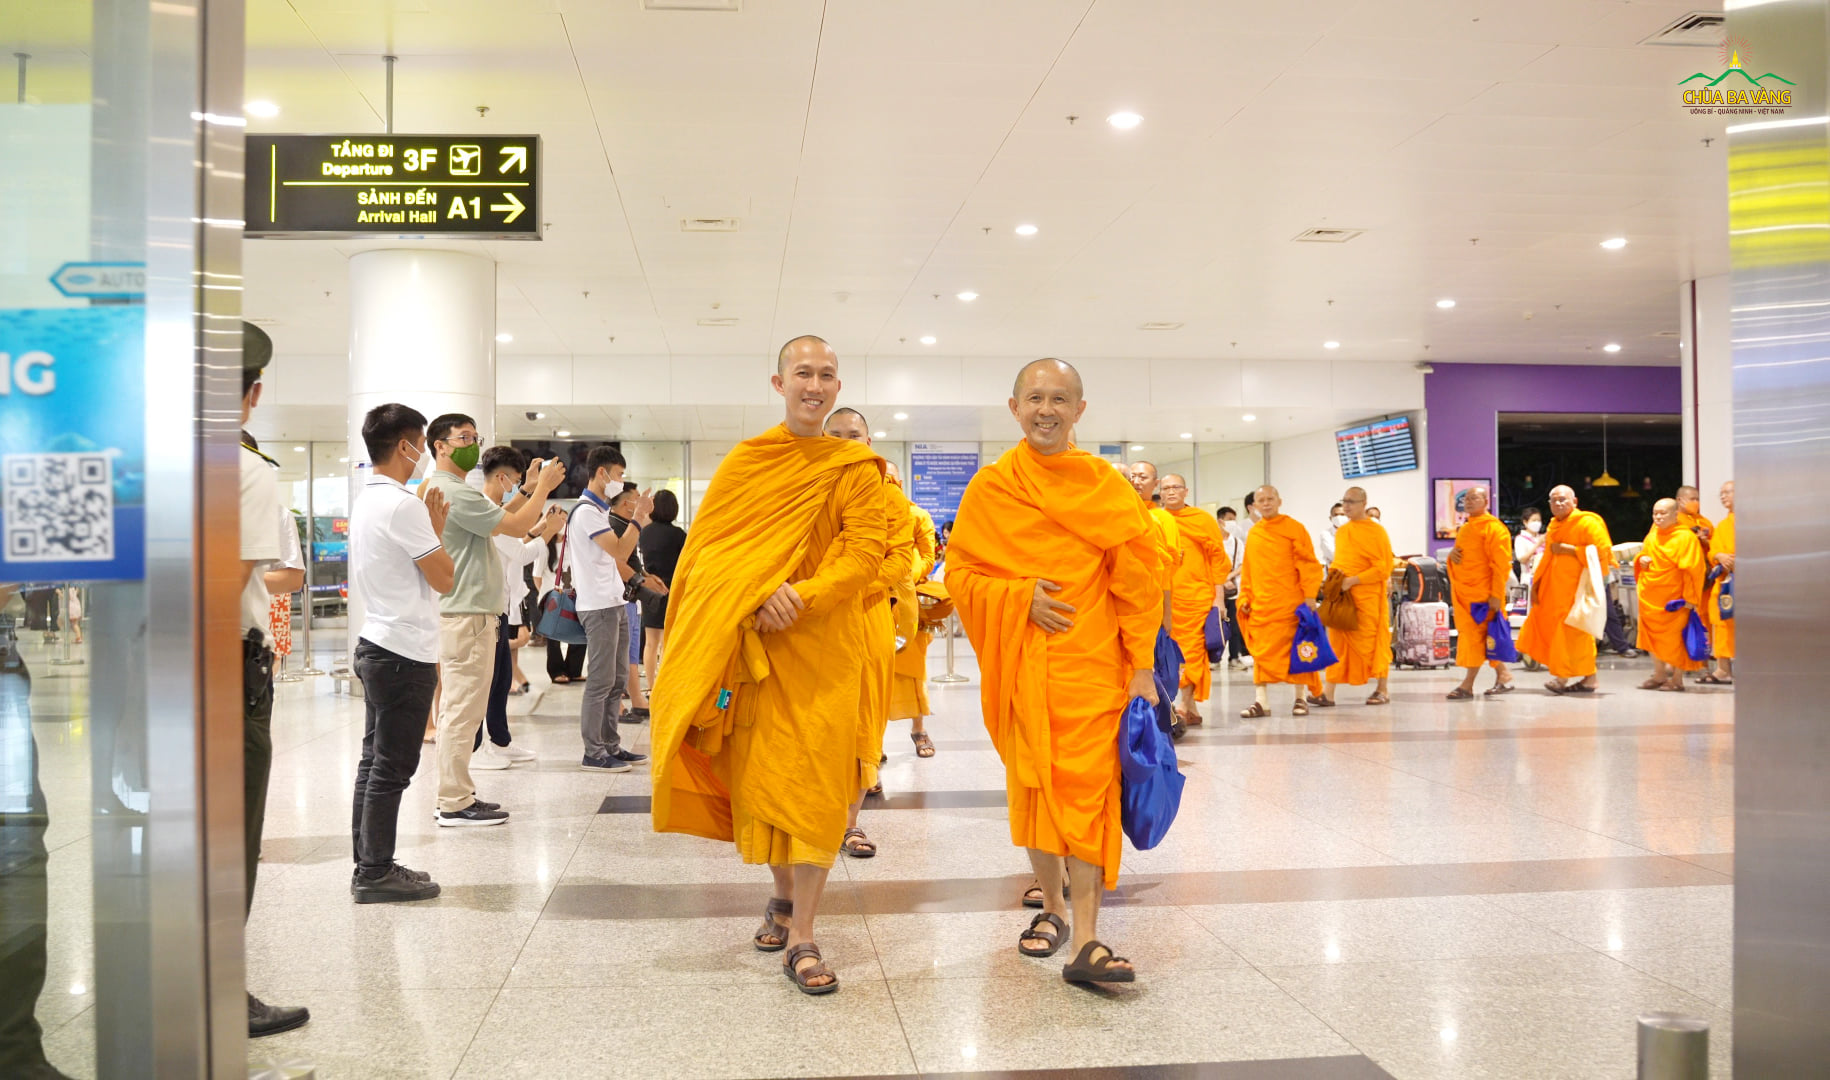 Nhân dịp Đại lễ Phật đản, một số chư Tôn đức Tăng từ nhiều quốc gia trên thế giới đã đến Việt Nam tham quan và dự Đại lễ Phật đản cùng chư Tăng Ni, Phật tử Việt Nam